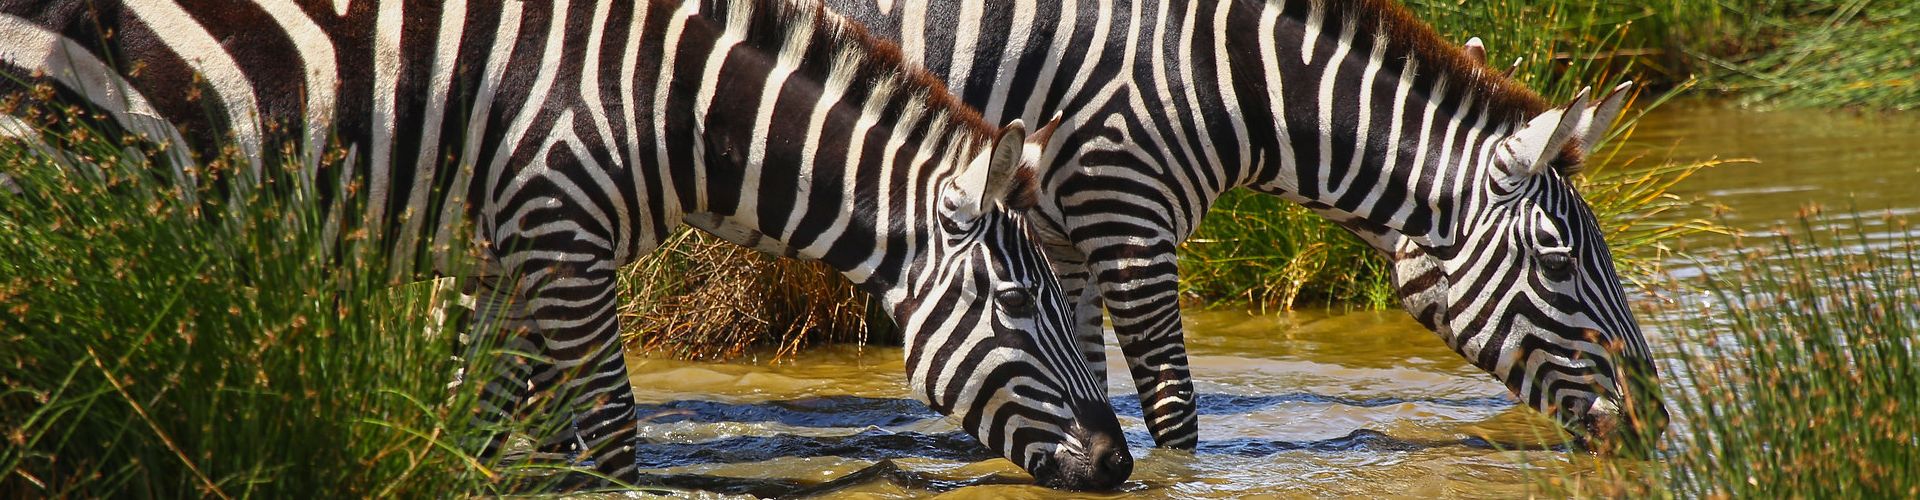 Zebras trinken aus einem kleinen Bach in der Nähe des Lake Manyara